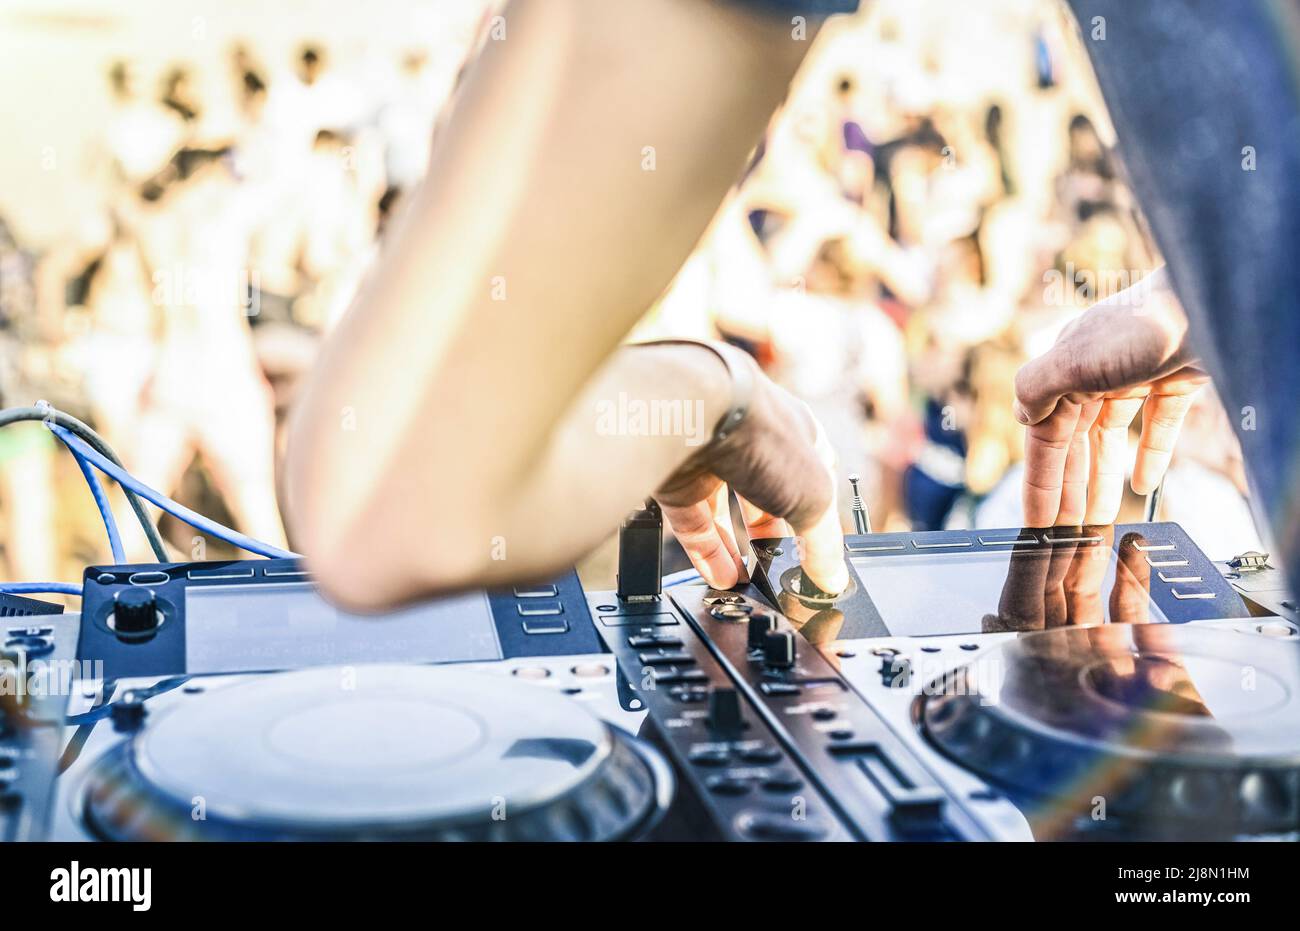 Nahaufnahme von dj spielt Elektro-Sound auf modernen cd-usb-Player bei Sommer Beach Party - Musikfestival und Entertainment-Konzept - unfokussierten Hintergrund Stockfoto